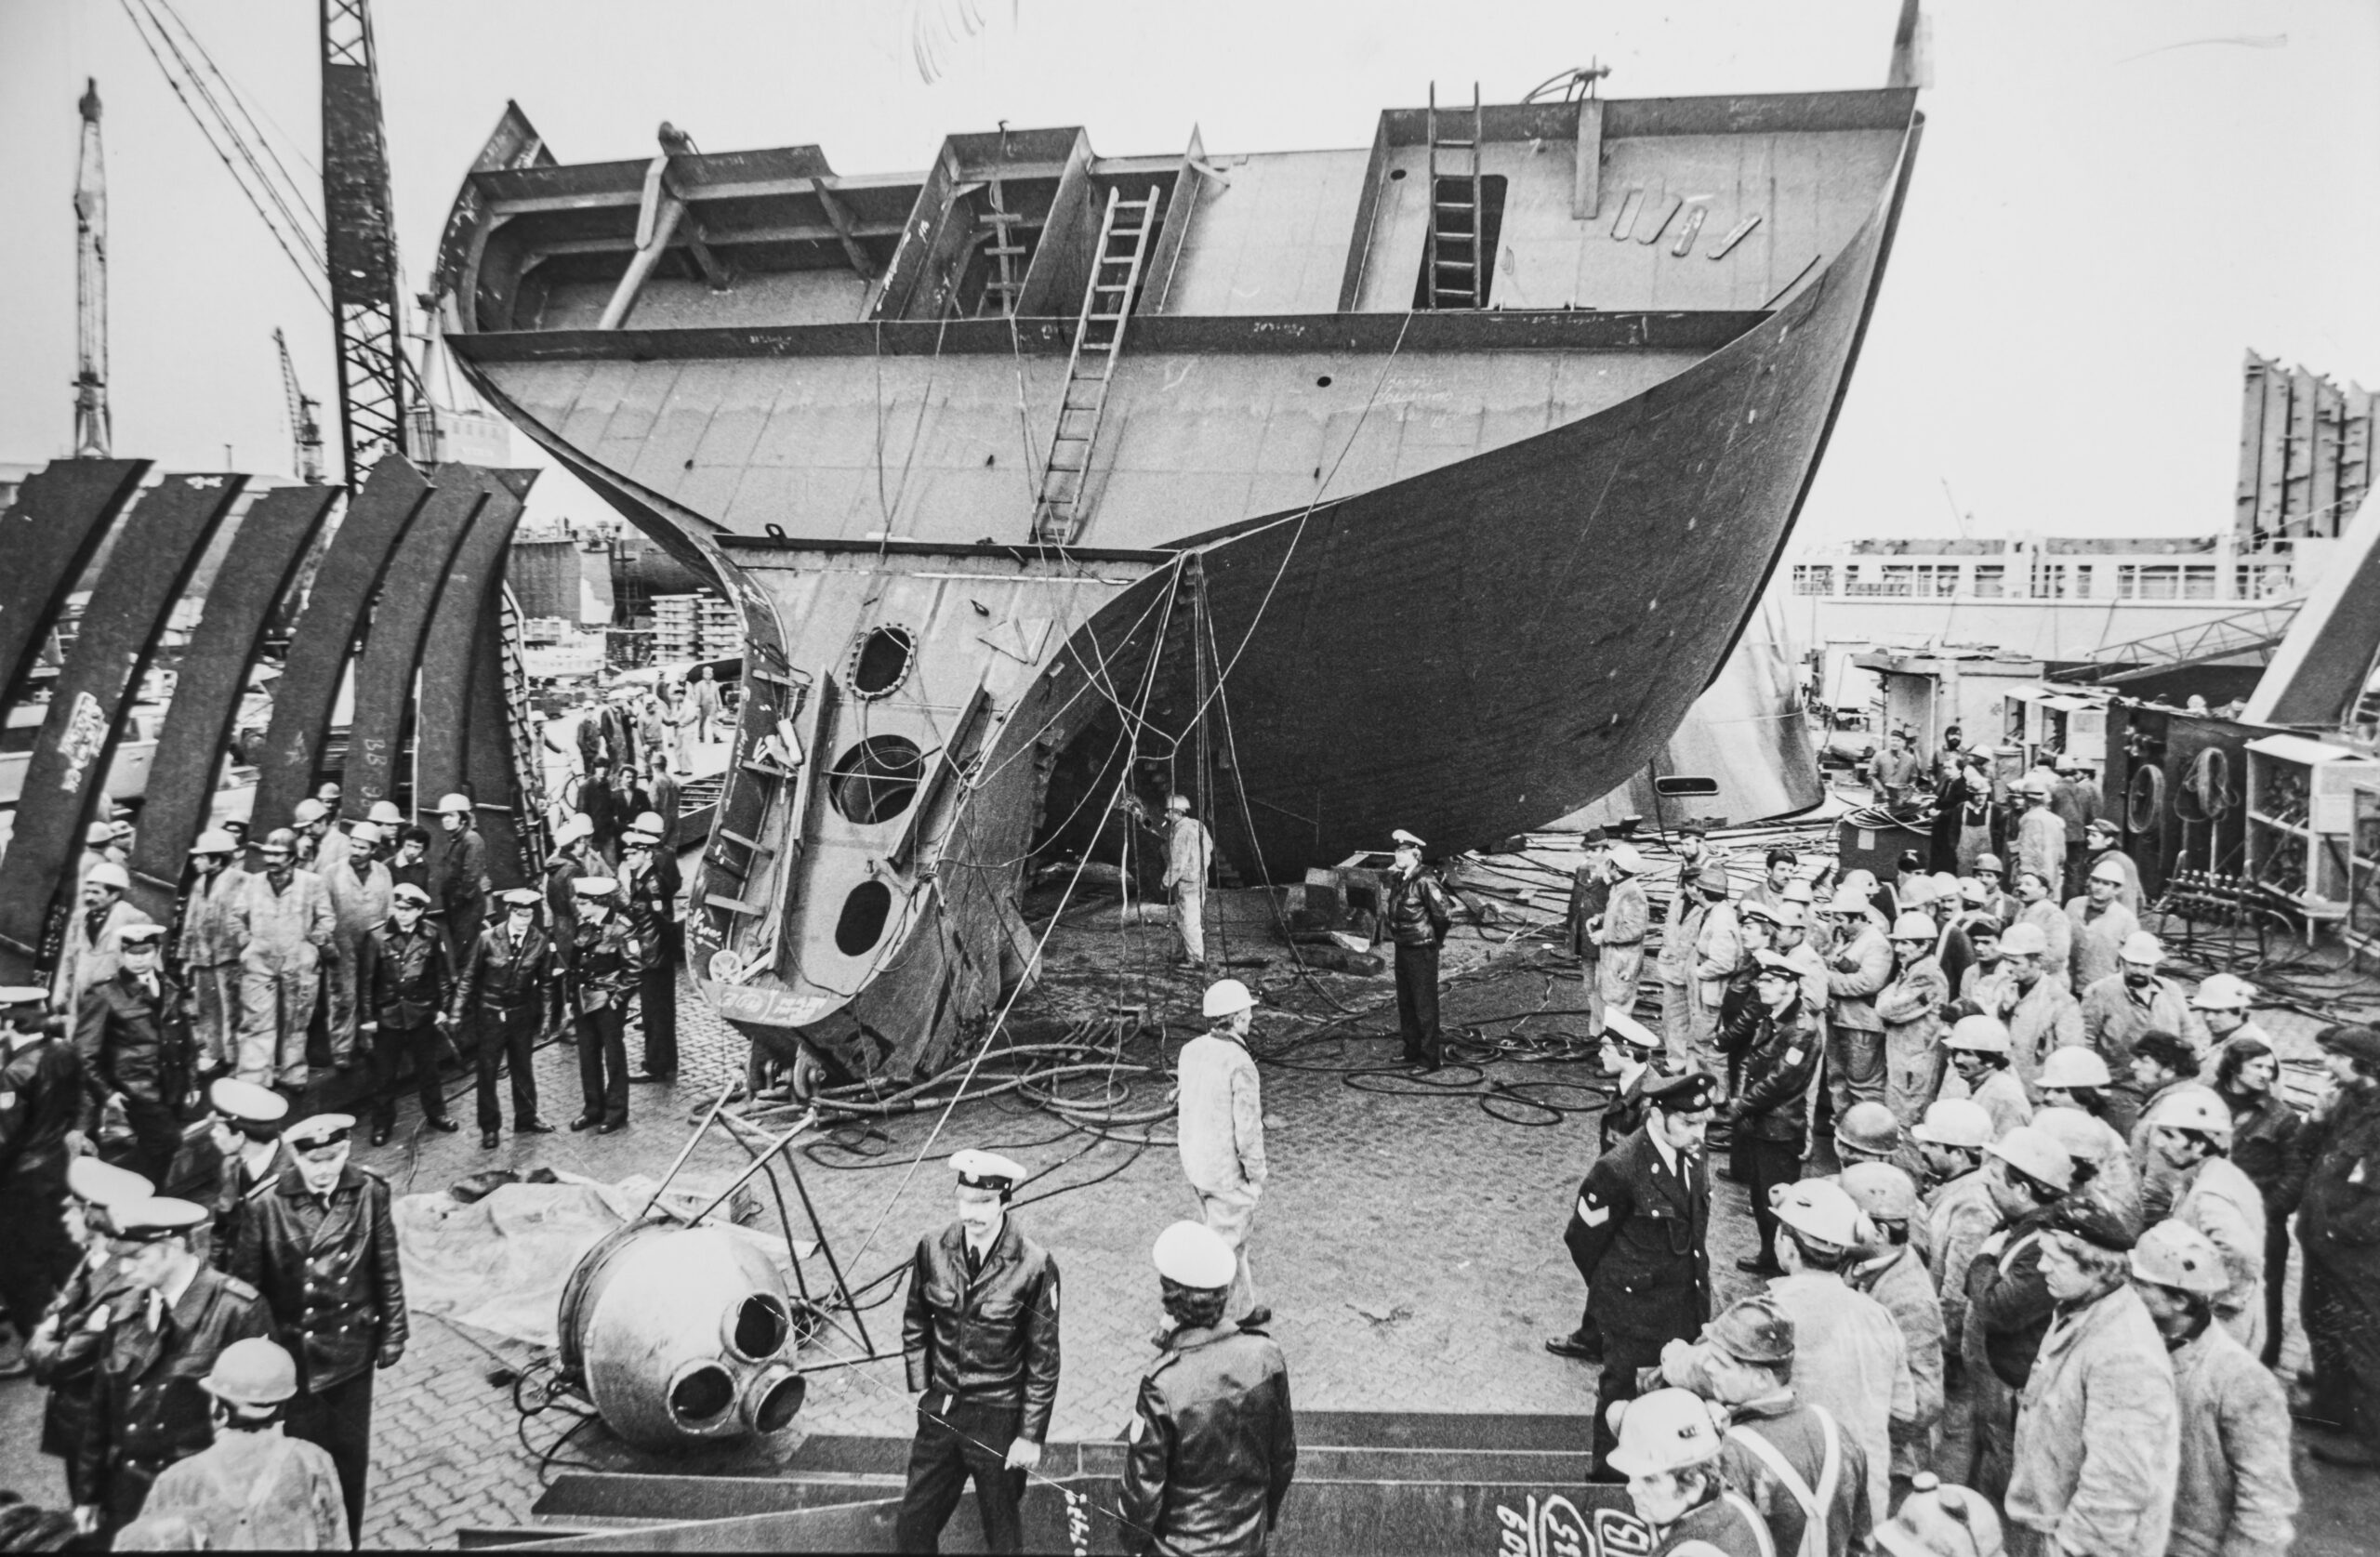 Aus 12 Metern Höhe stürzte Nuri C. vom umgekippten Schiffsteil, wurde dann von dem kugelförmigen Lüfter im Vordergrund erschlagen.